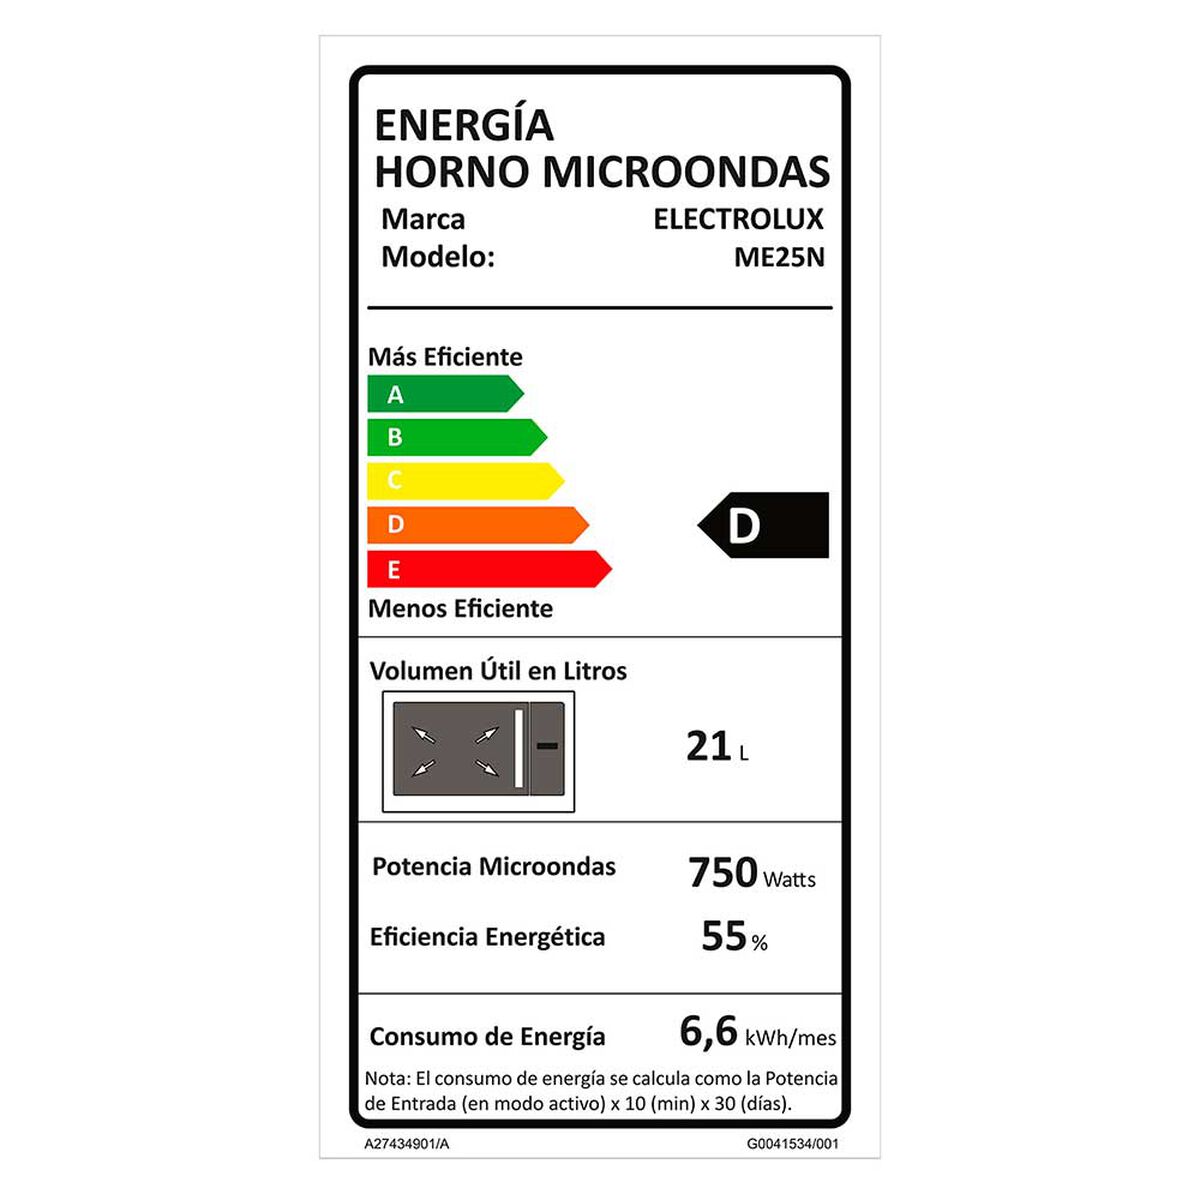 Microondas Electrolux ME25N 25 lts.